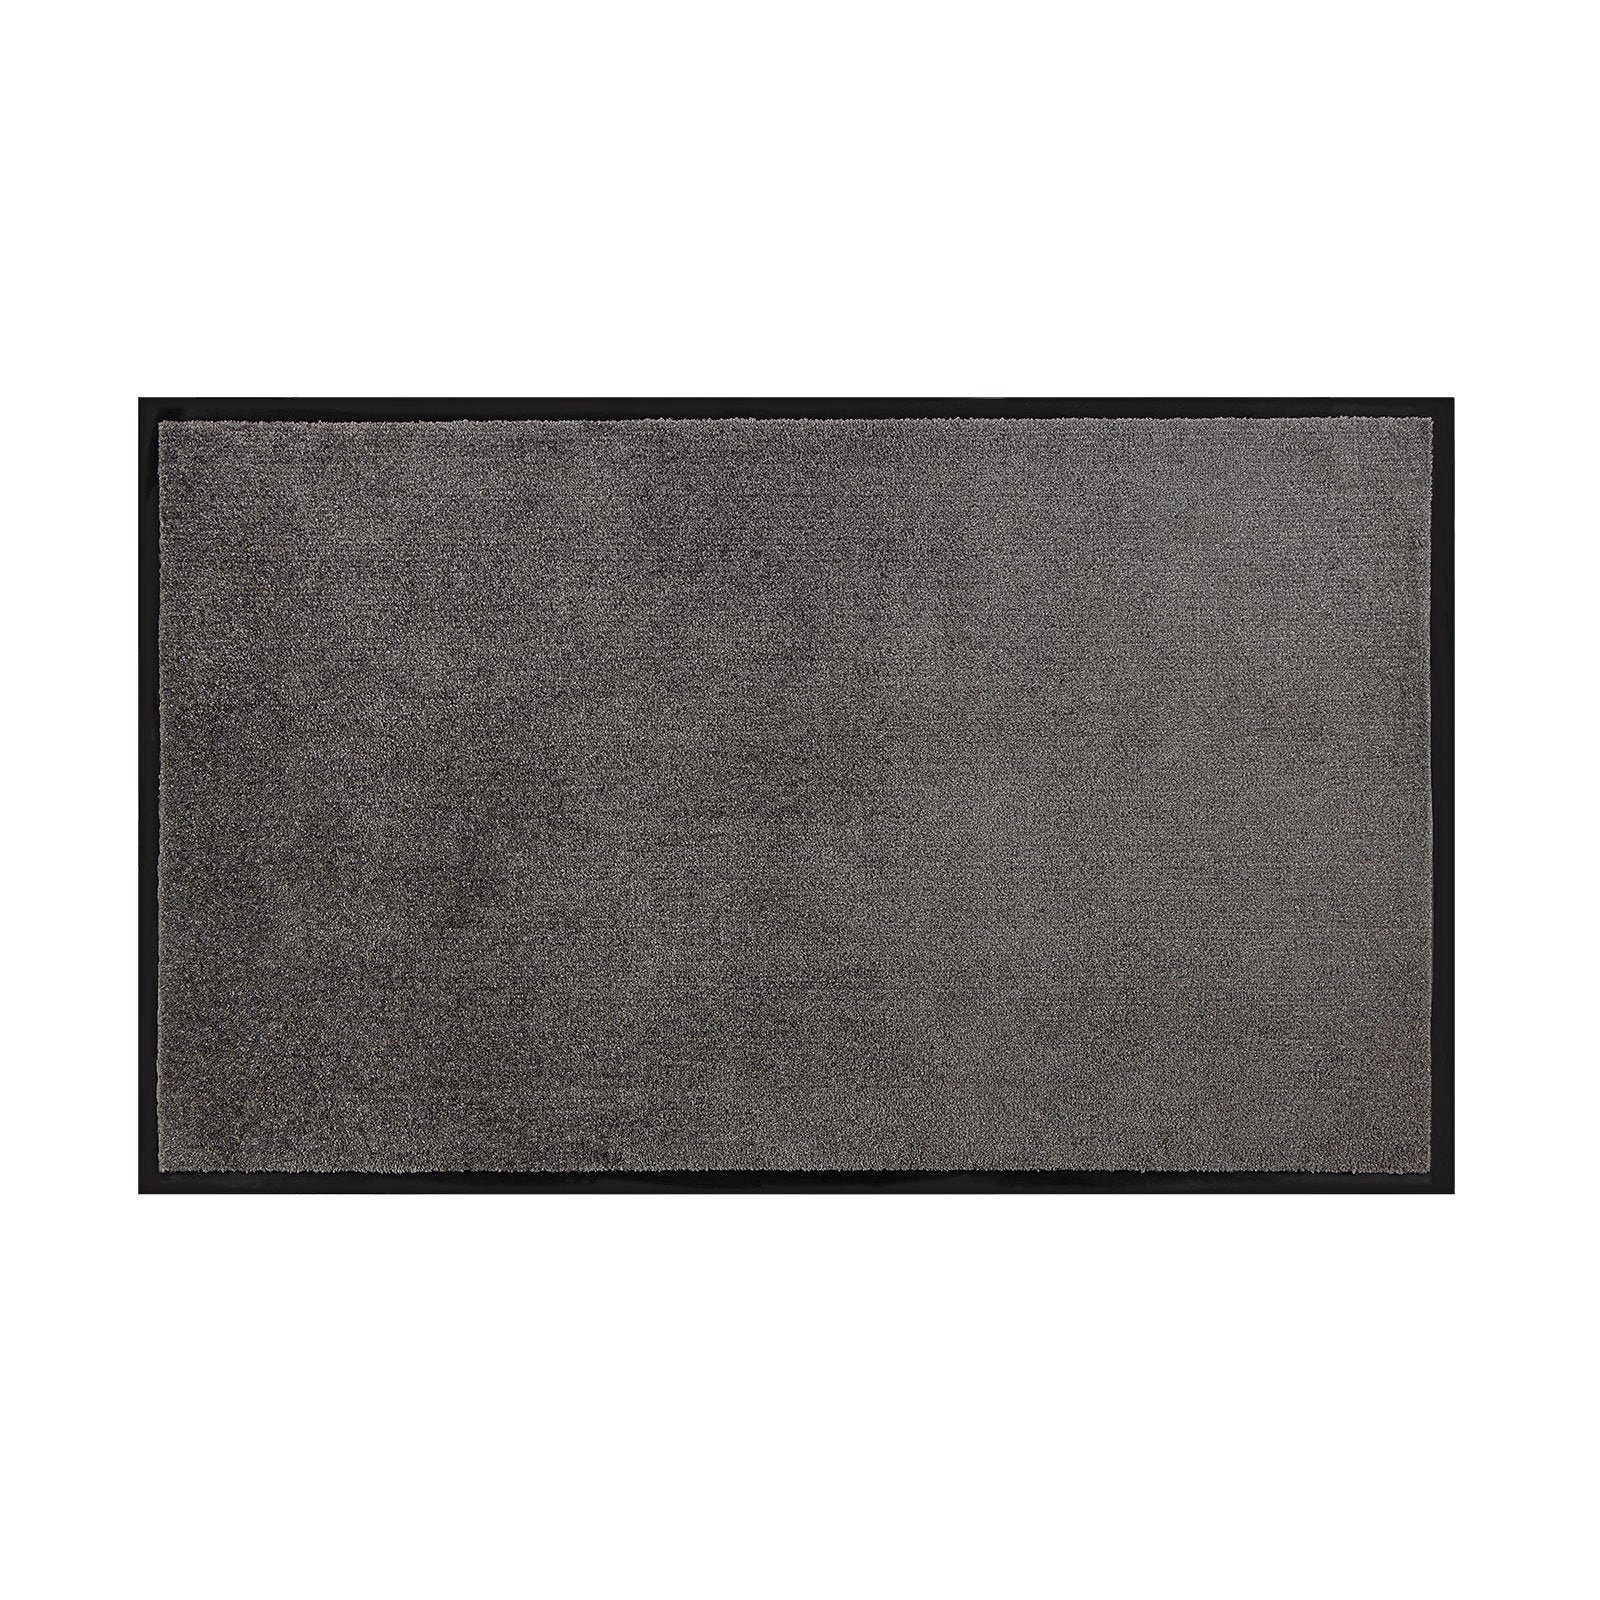 Fußmatte Schmutzfangmatte Flash, Eingangsmatte in vielen Farben & Größen, Sauberlaufmatte, Floordirekt, Rechteckig, Höhe: 5.5 mm Grau